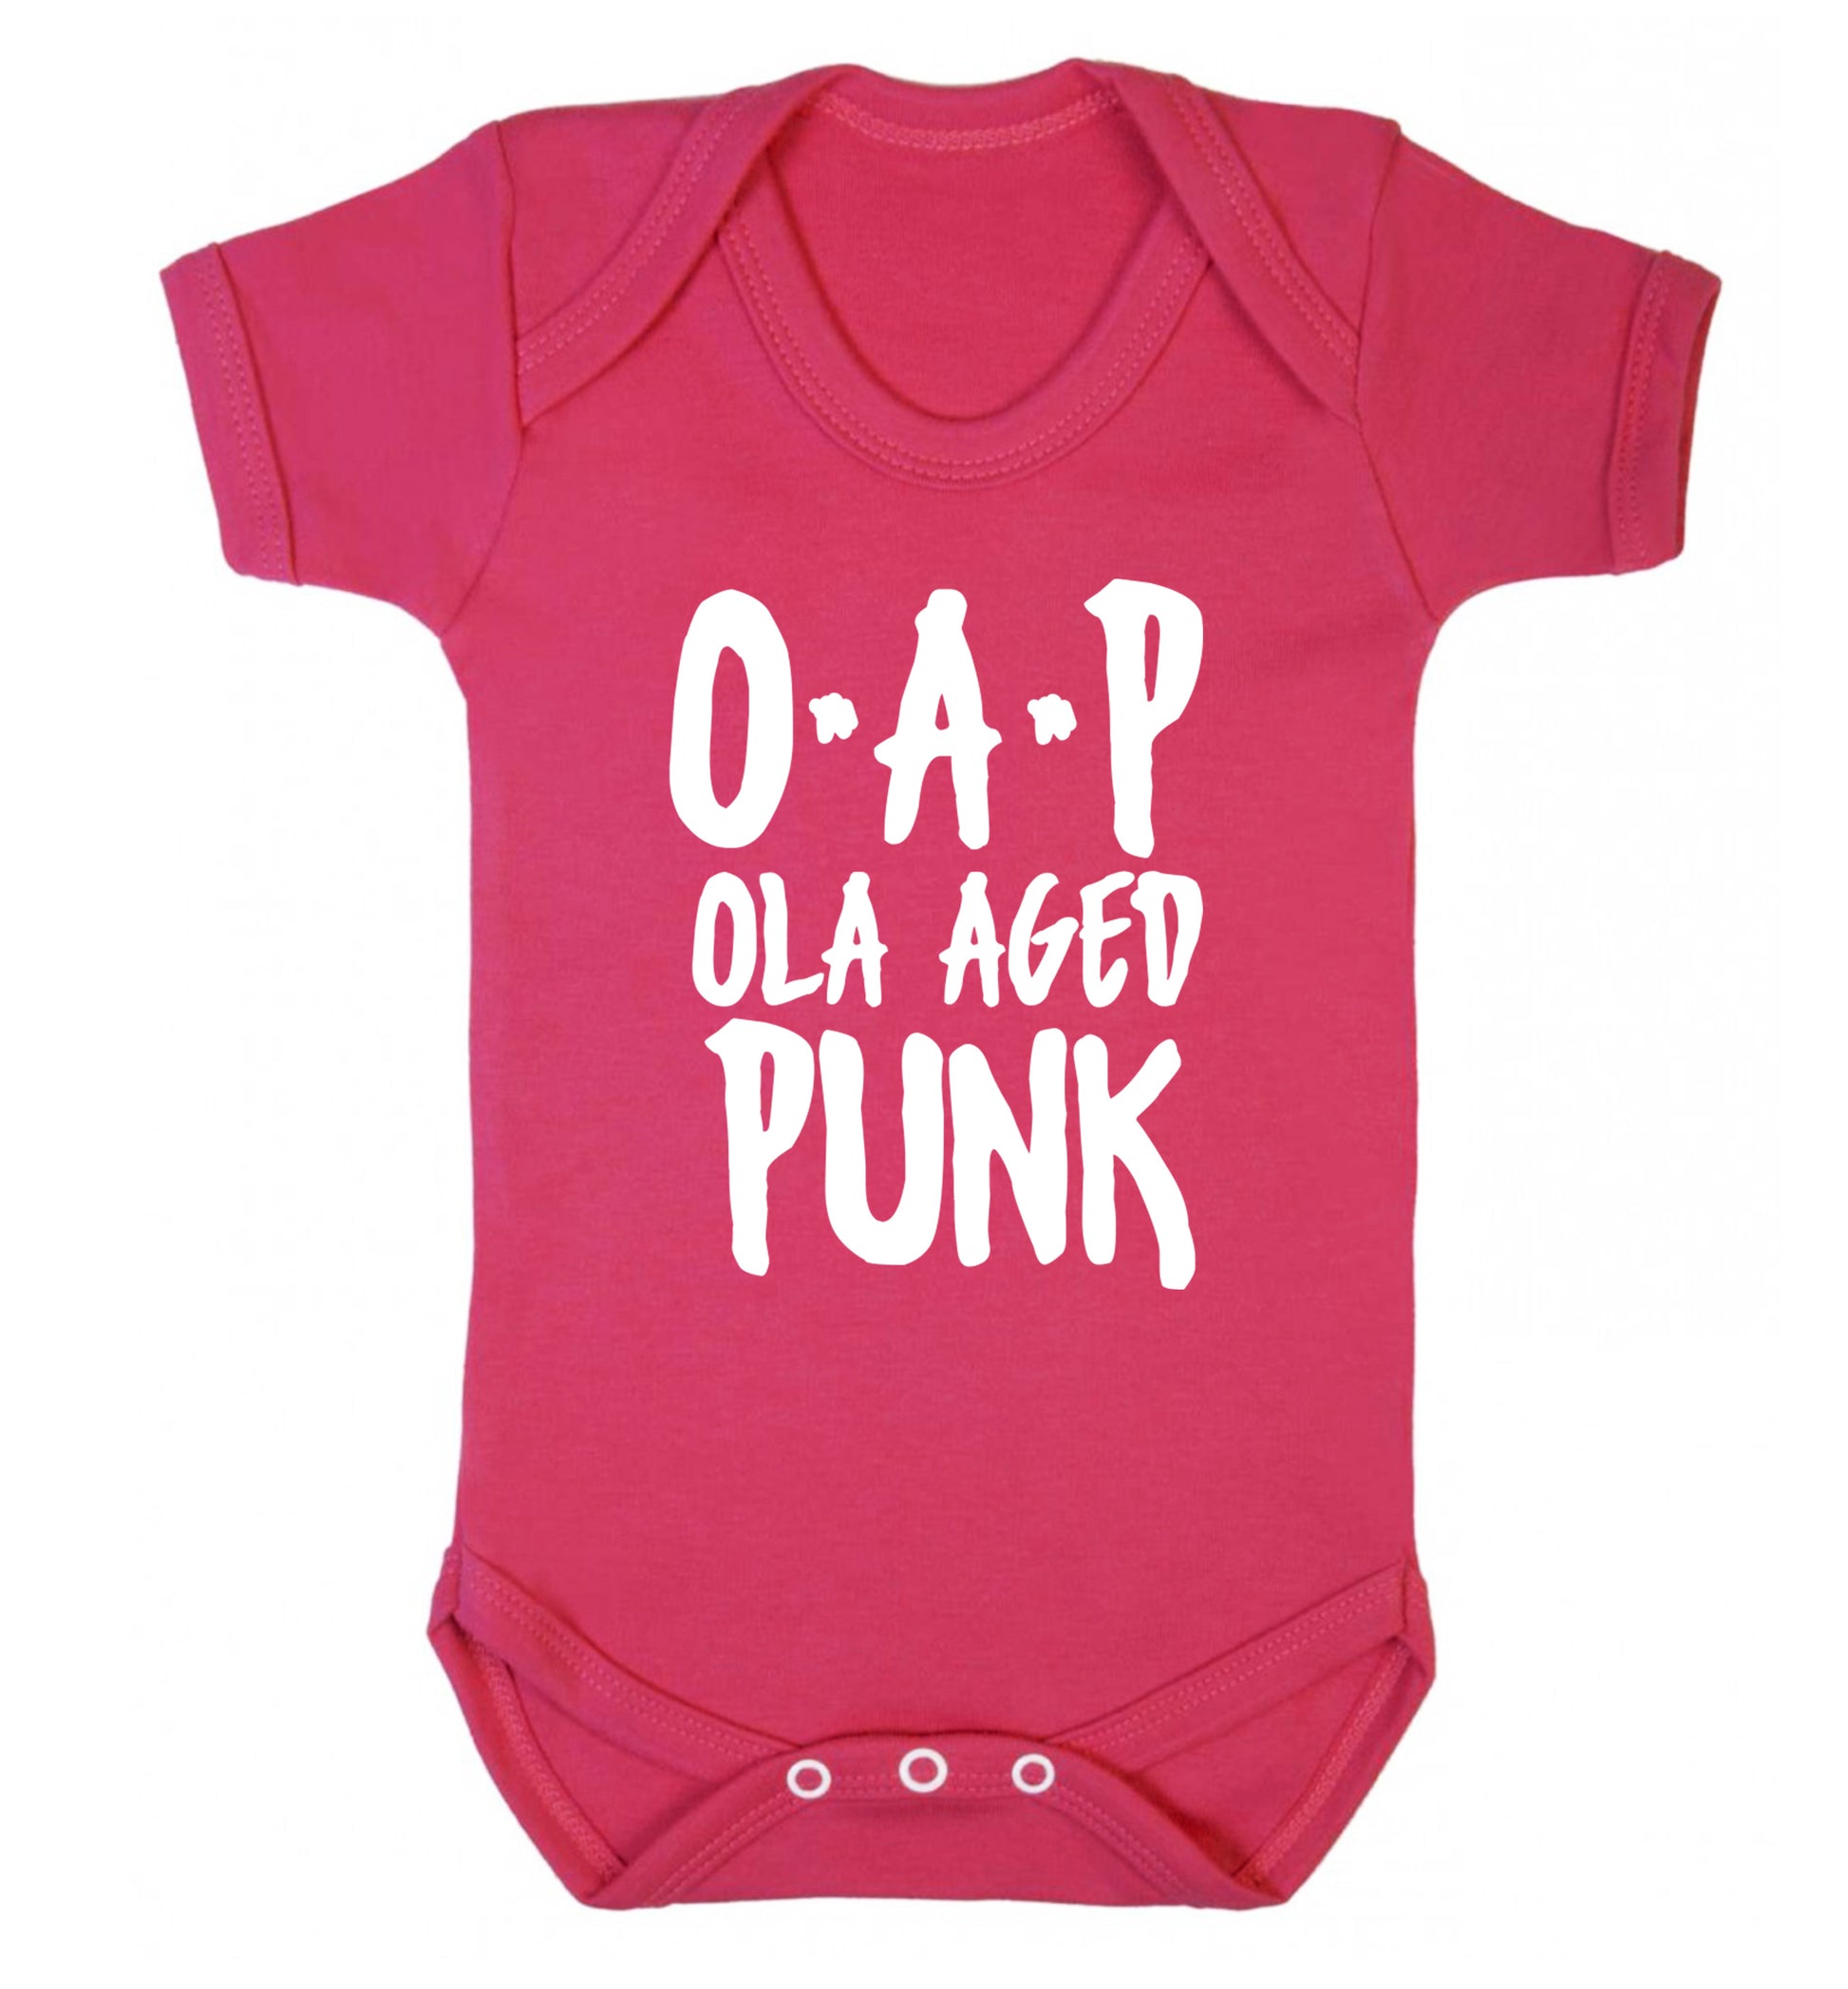 O.A.P Old Aged Punk Baby Vest dark pink 18-24 months